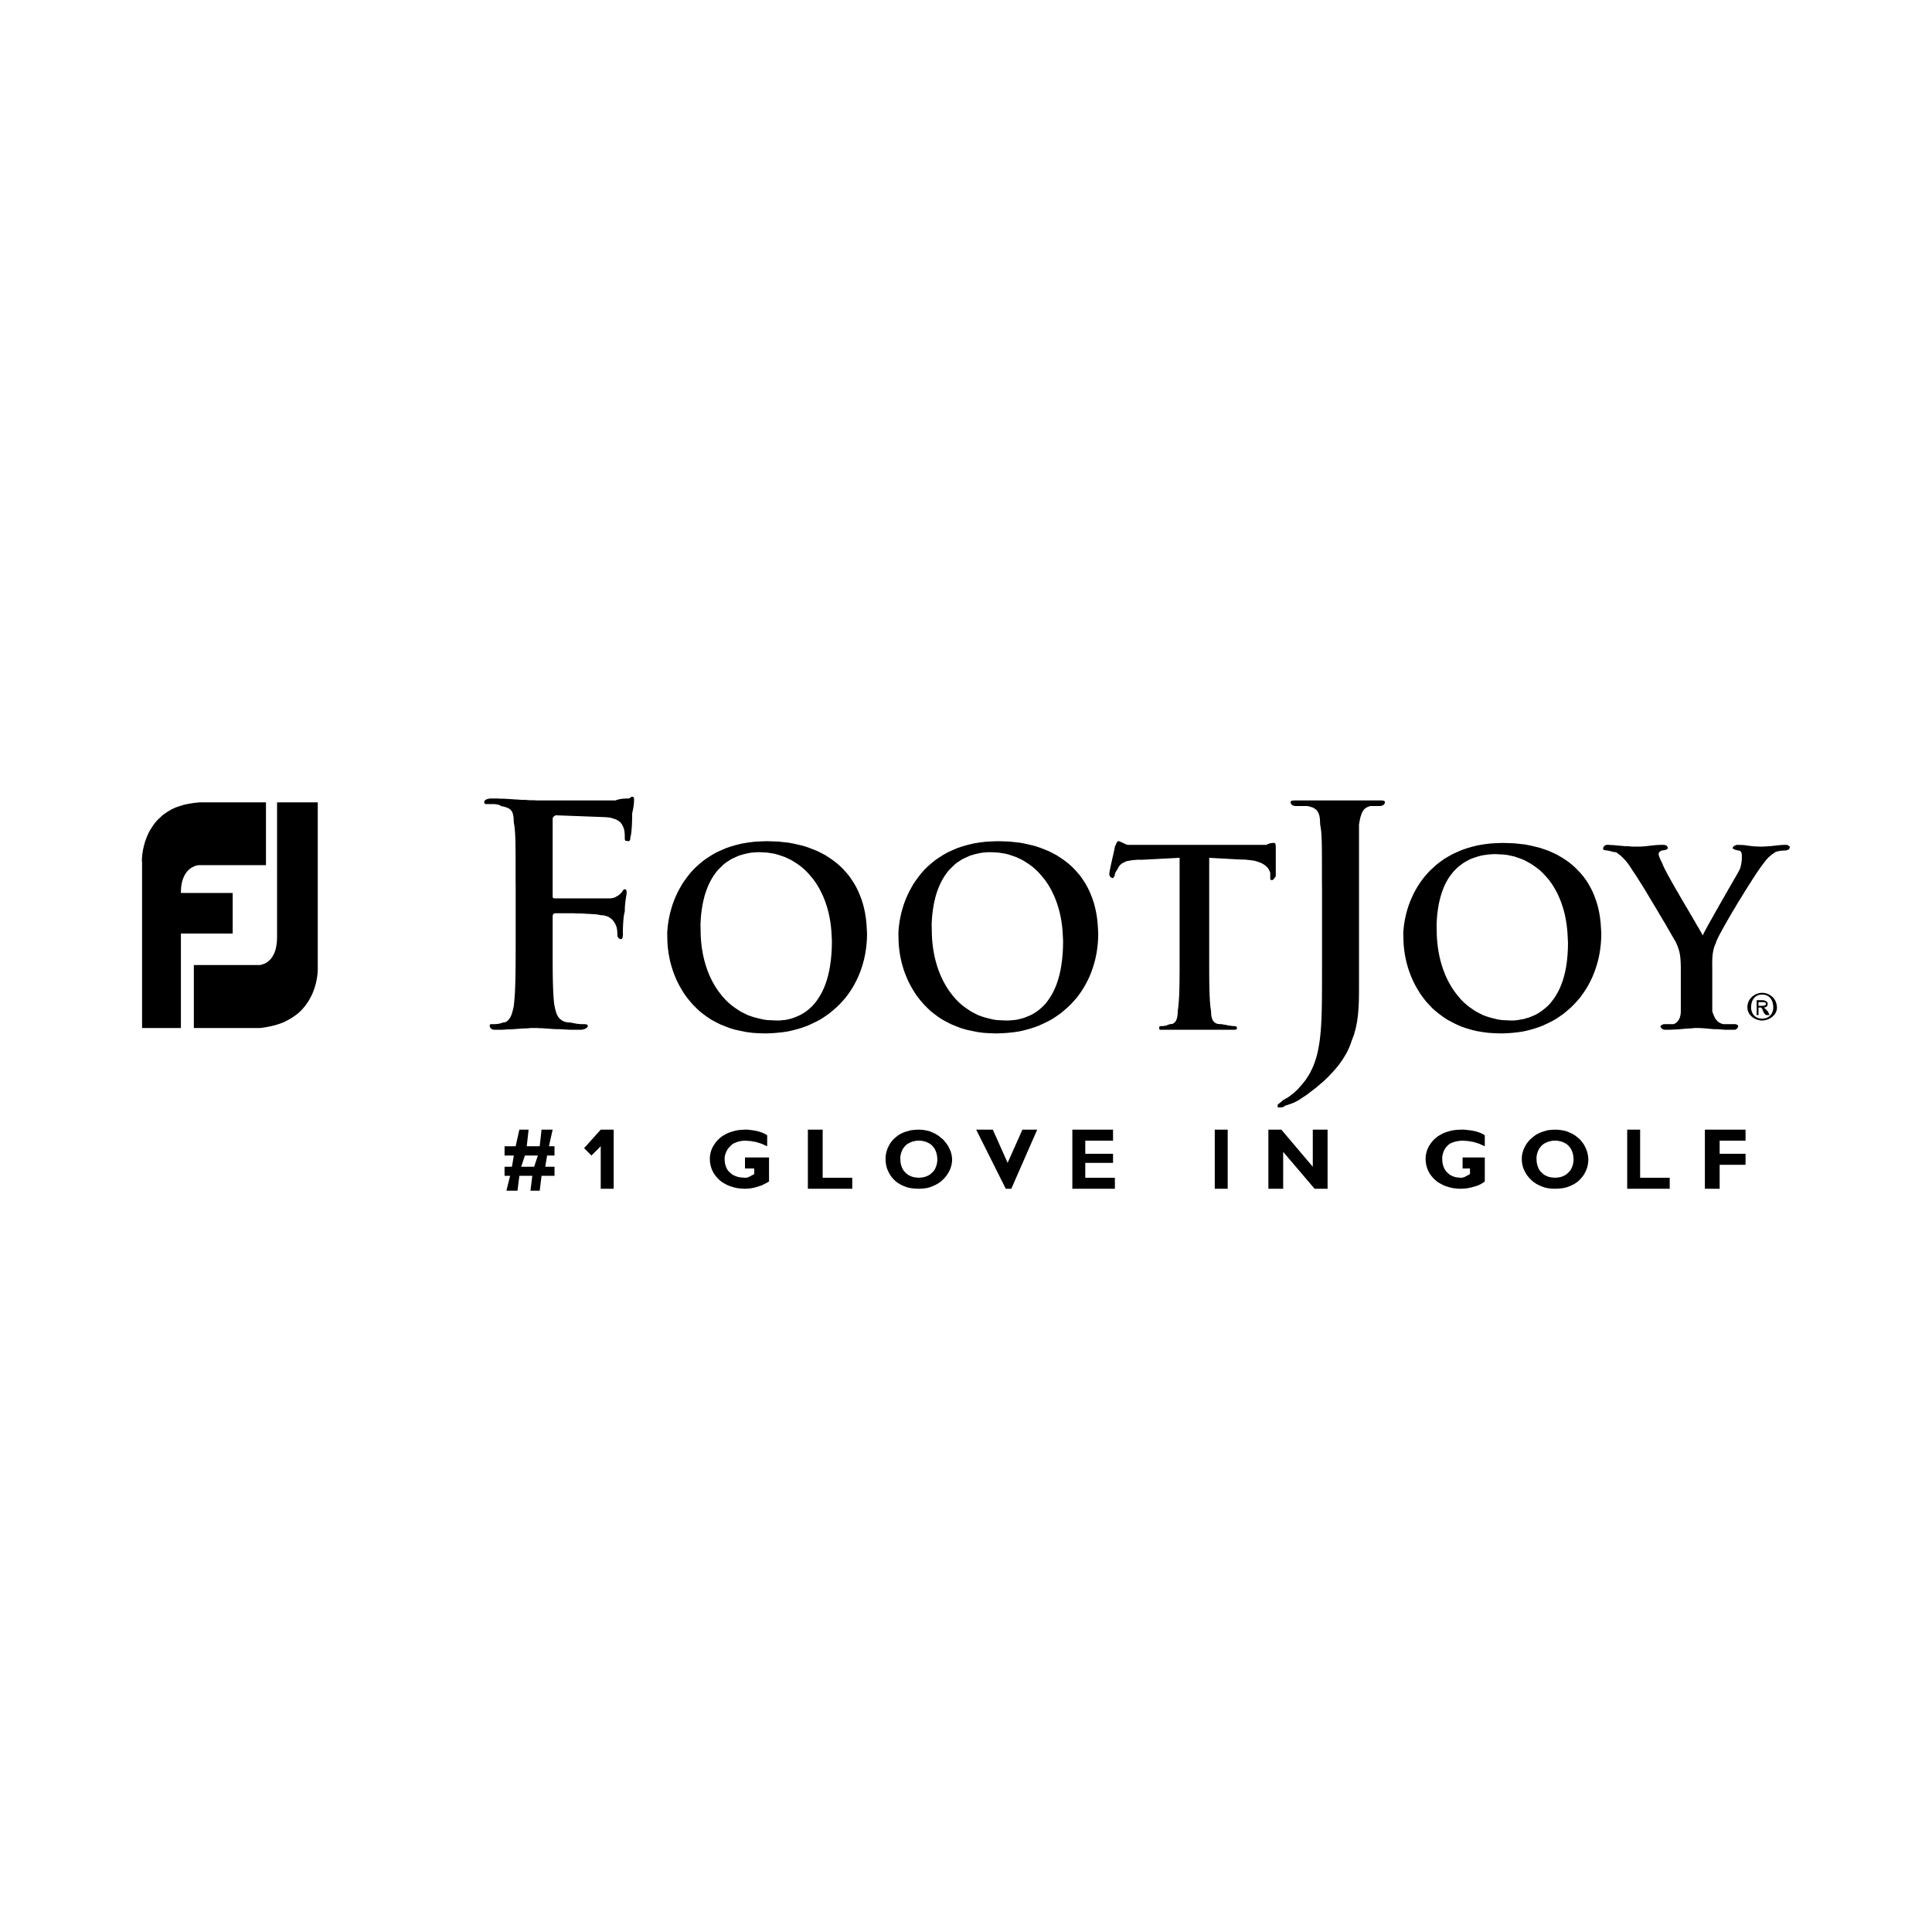 FootJoy Logo - FootJoy – Logos Download